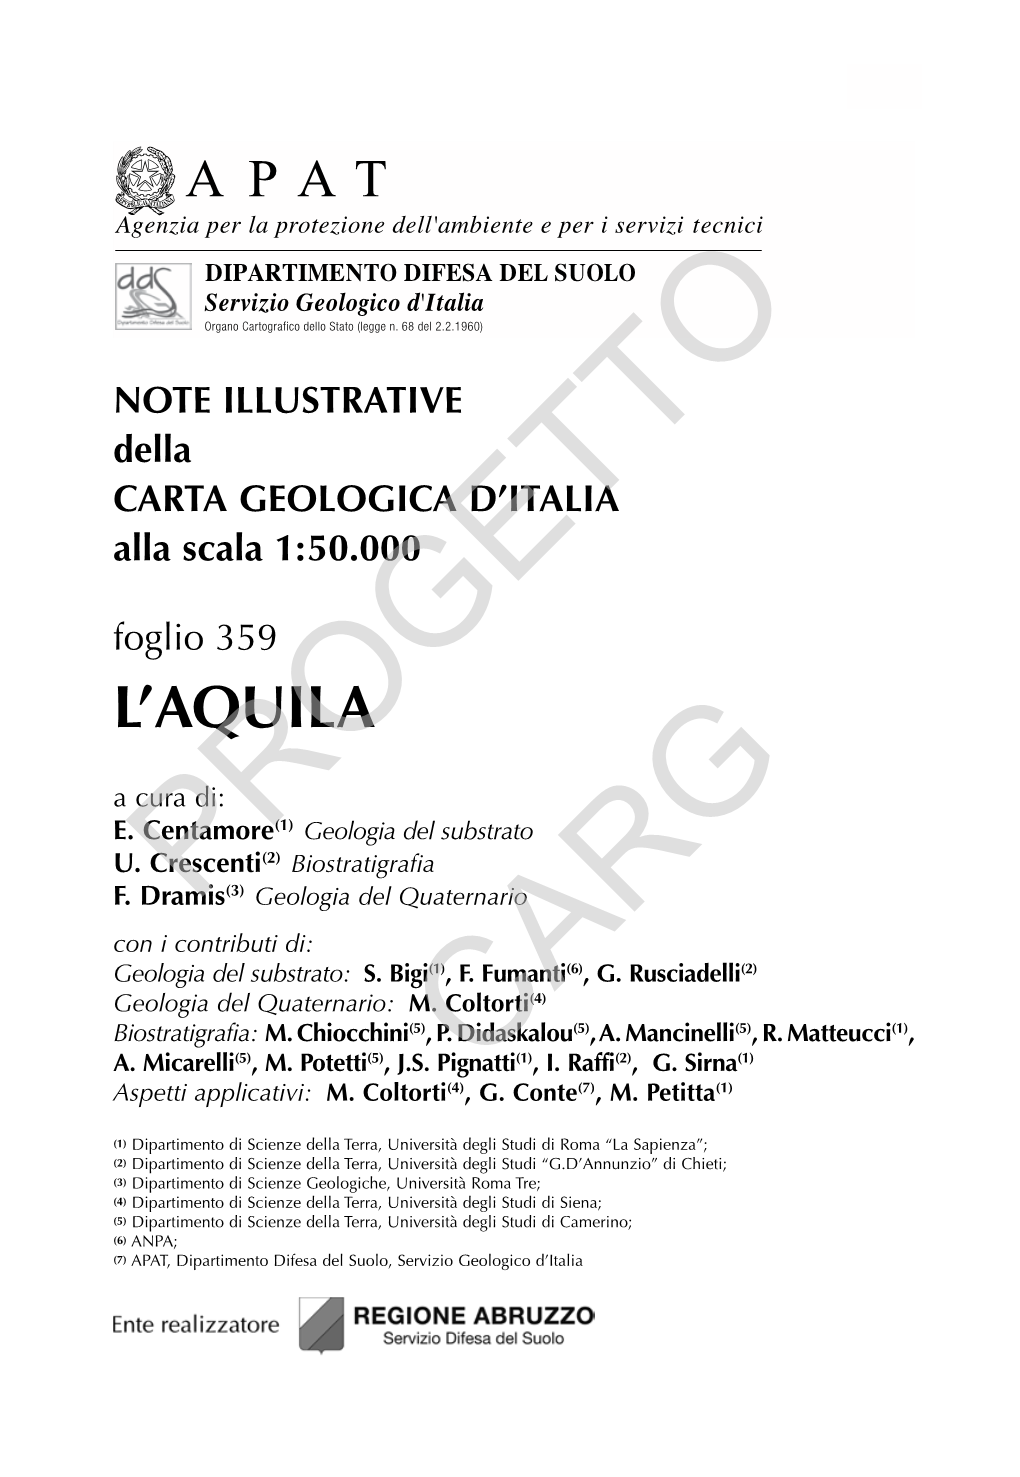 Progetto CARG Per Il Dipartimento Difesa Del Suolo - Servizio Geologico D’Italia: F